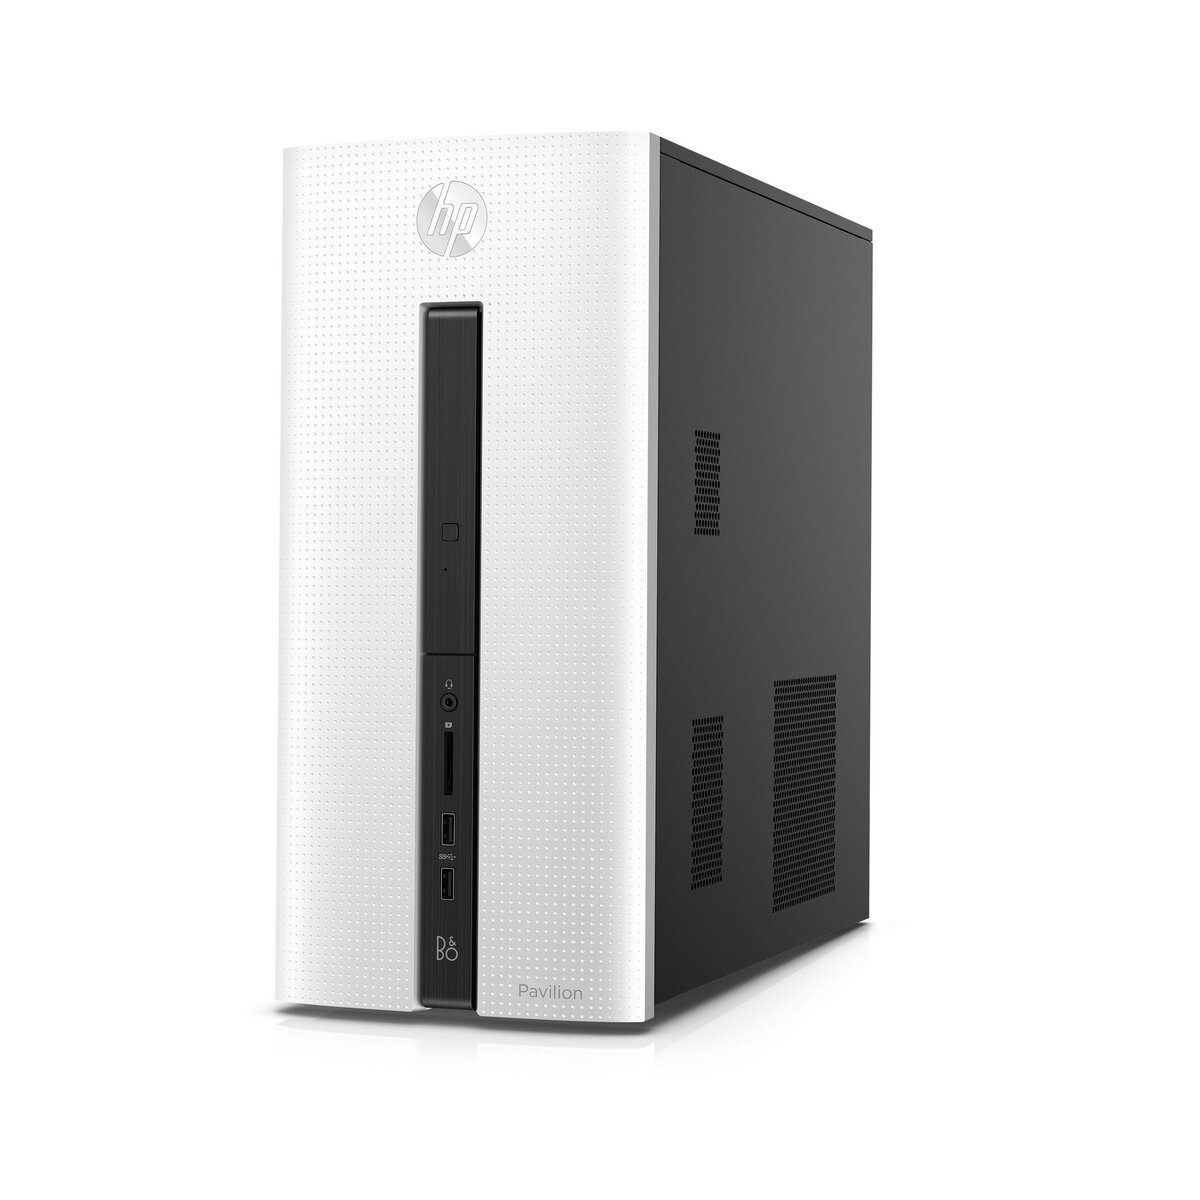 Hewlett Packard Unité centrale - Pavilion Desktop 550-102nf - Blanc glacial